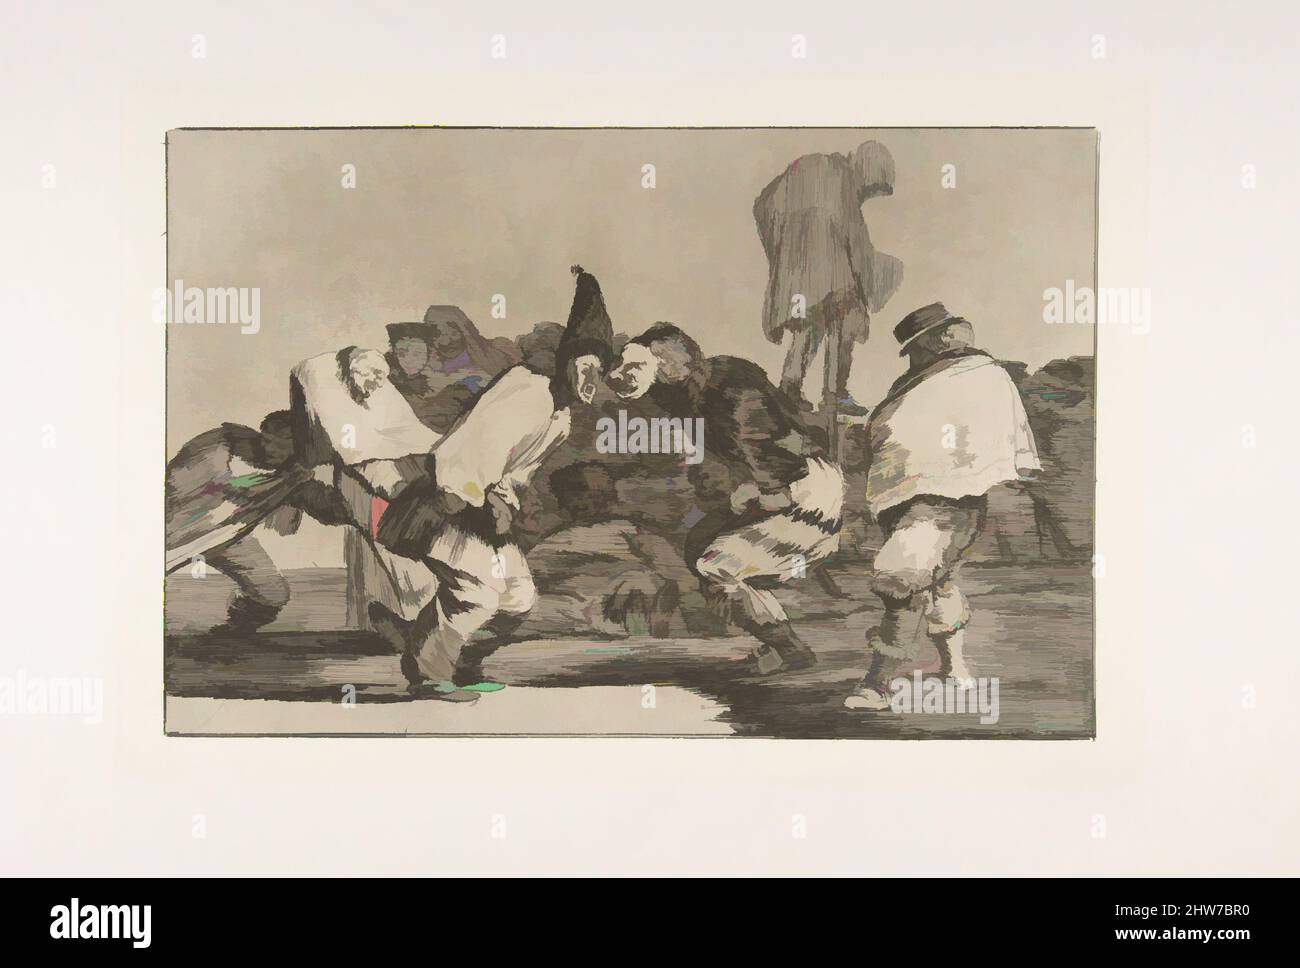 Art inspiré par la planche 14 des 'Disparates' : Carnival Folly, CA. 1816–23 (publié en 1864), Etching et aquatint, plaque : 9 5/8 × 13 3/4 po. (24,5 × 35 cm), gravures, Goya (Francisco de Goya y Lucientes) (espagnol, Fuendetodos 1746–1828 Bordeaux), de la première édition posthume, oeuvres classiques modernisées par Artotop avec un peu de modernité. Formes, couleur et valeur, impact visuel accrocheur sur l'art émotions par la liberté d'œuvres d'art d'une manière contemporaine. Un message intemporel qui cherche une nouvelle direction créative. Artistes qui se tournent vers le support numérique et créent le NFT Artotop Banque D'Images